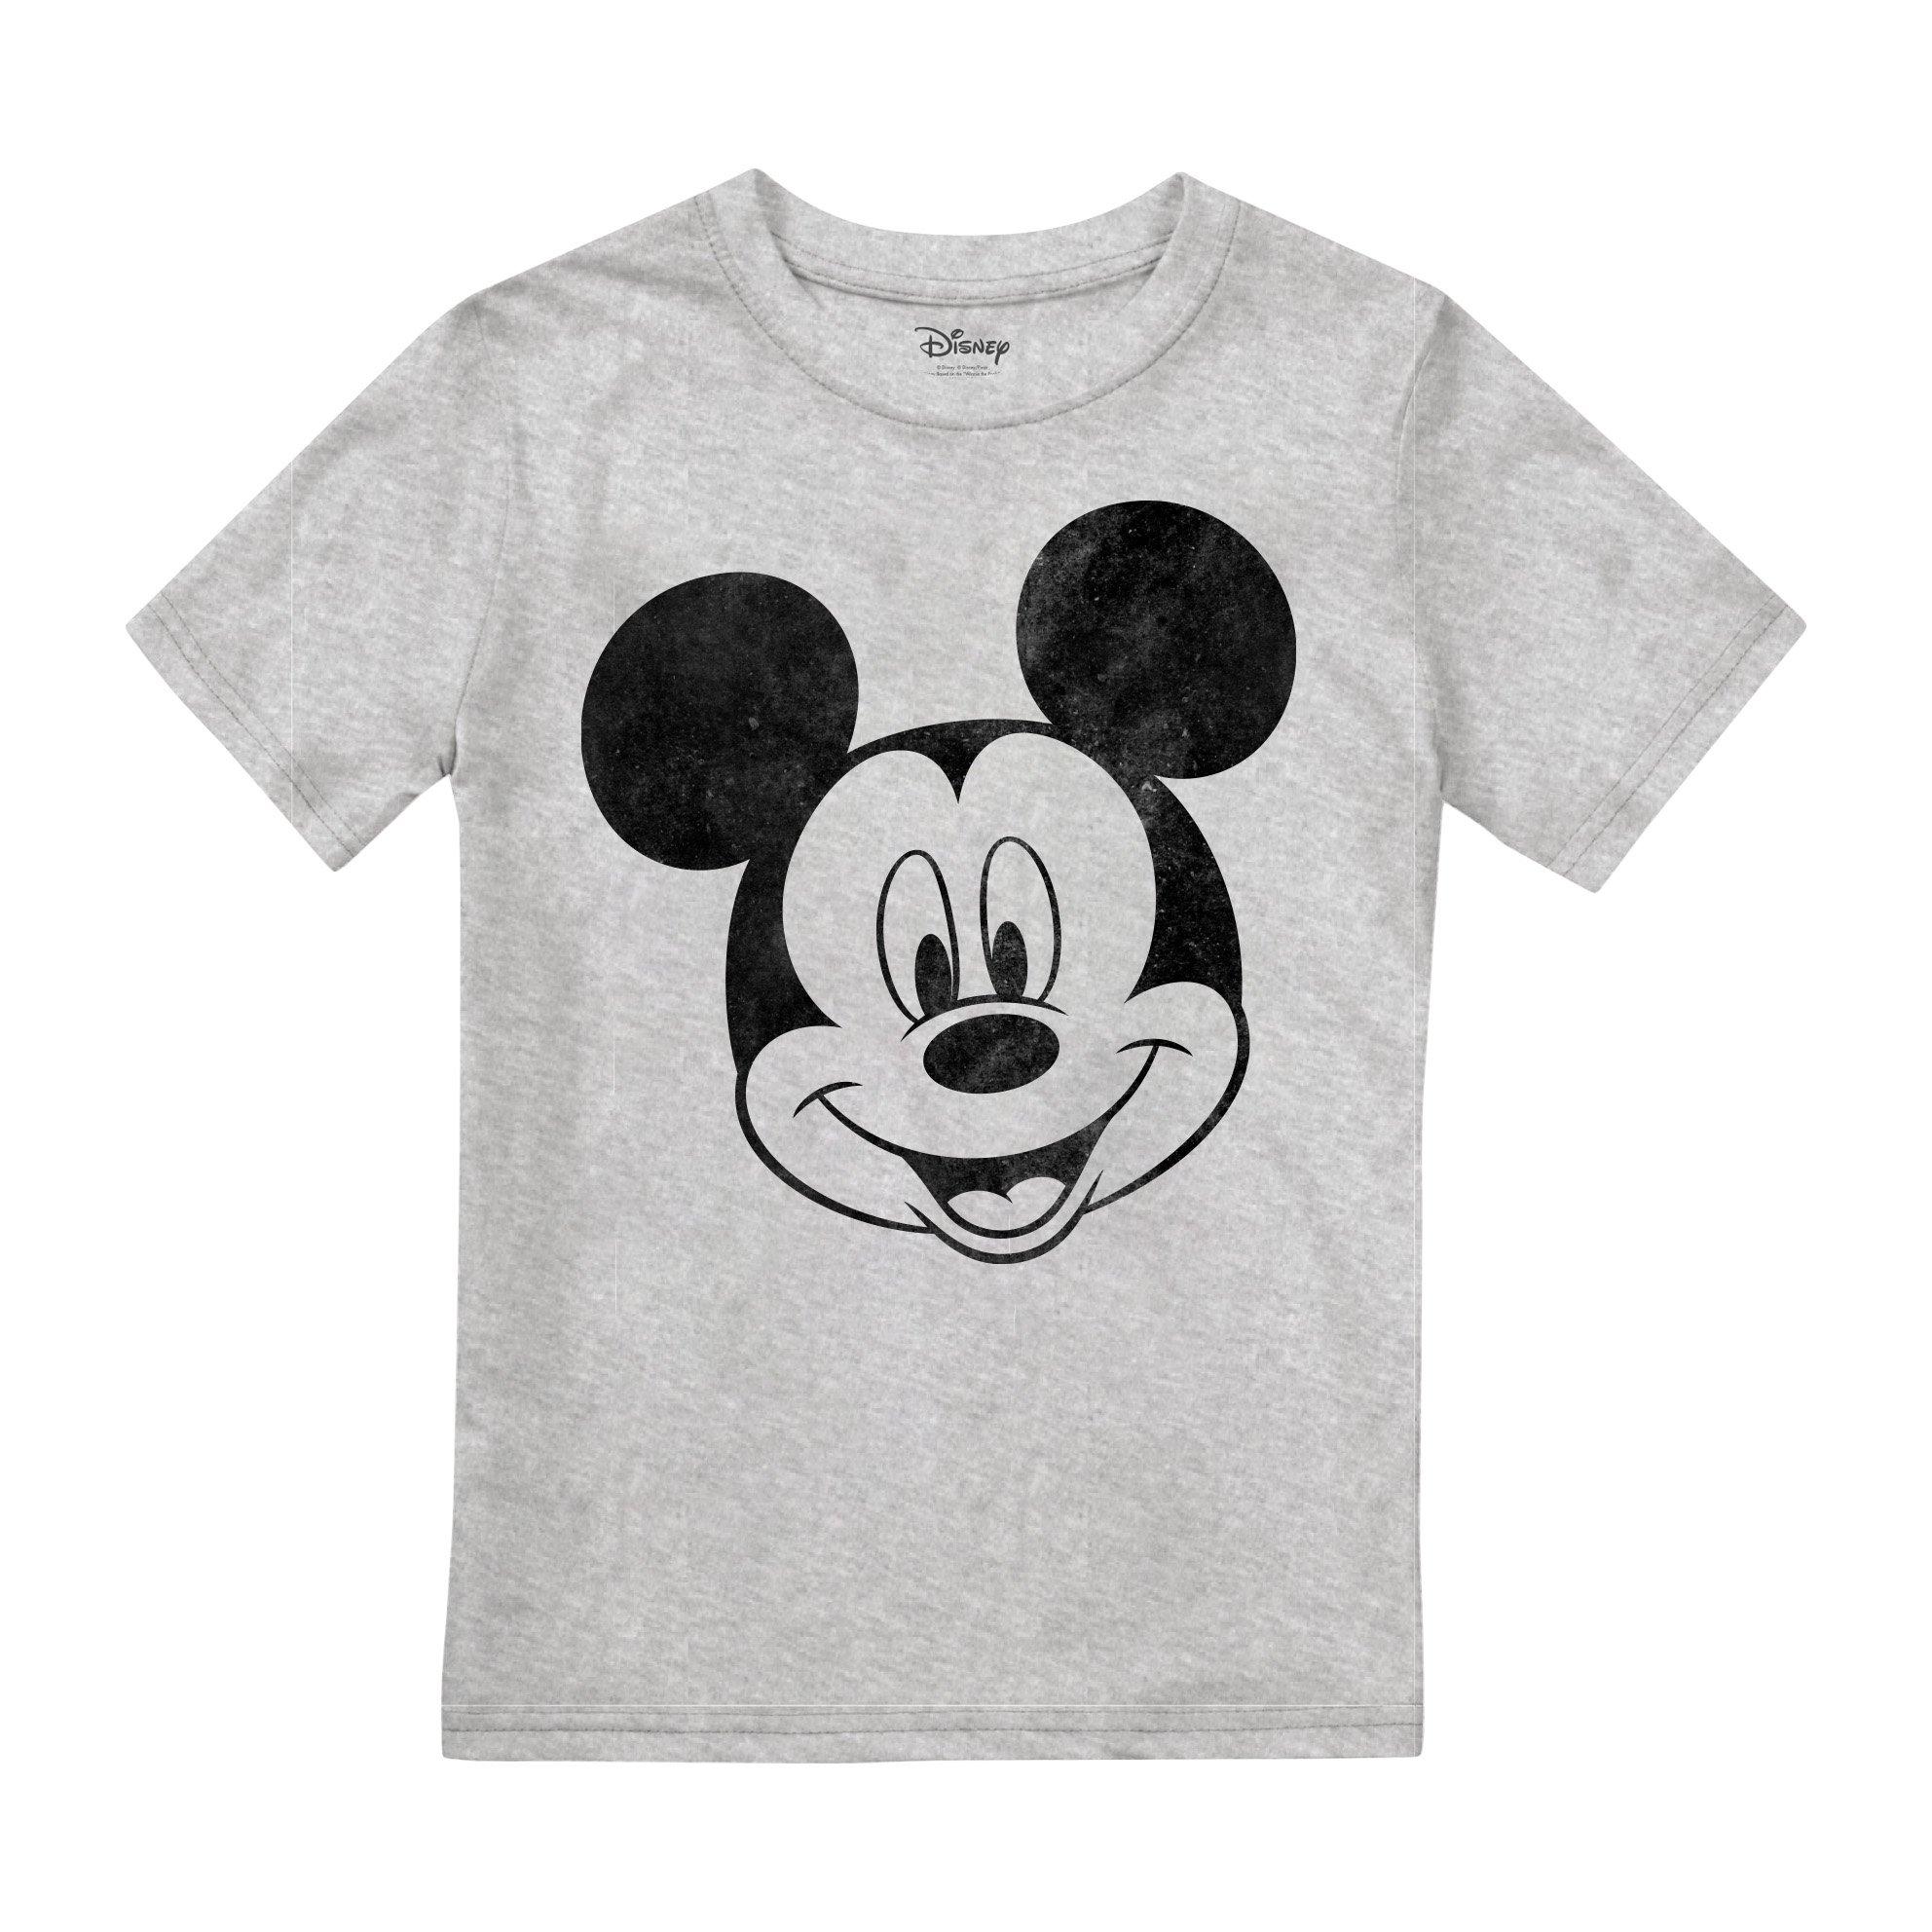 Однотонная футболка с Микки Маусом Disney, серый короткий пижамный комплект с минни маус disney мультиколор